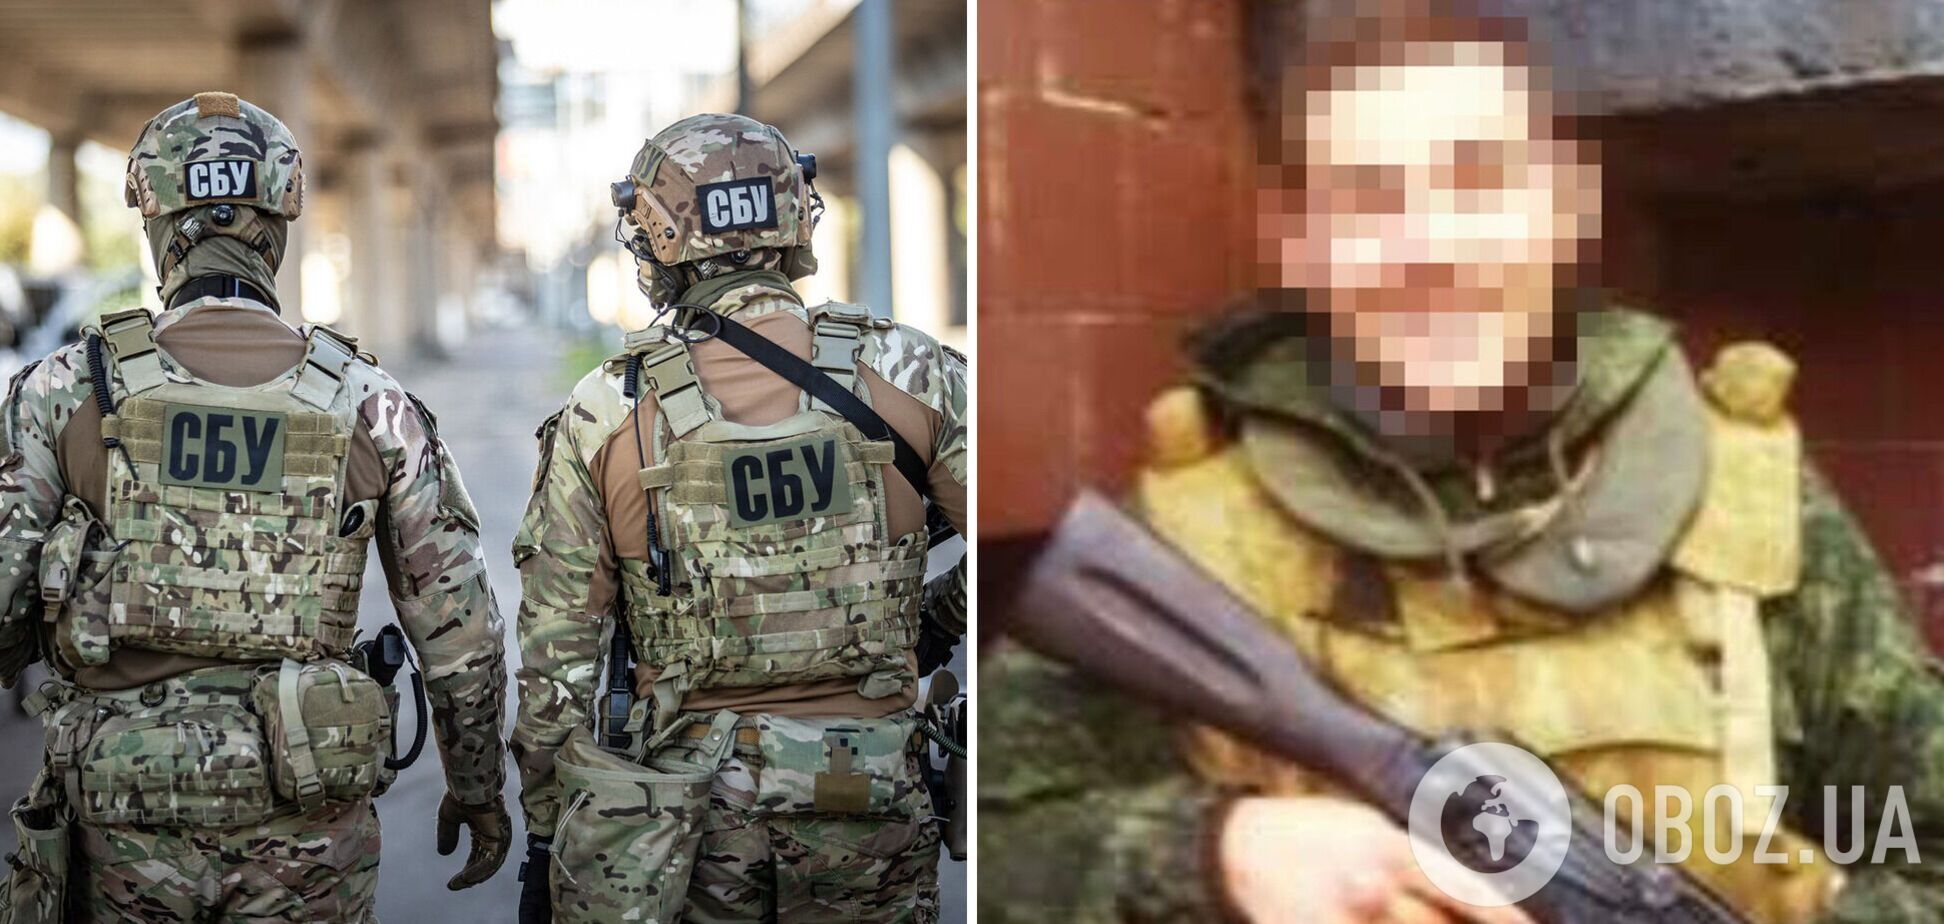 СБУ задержала разведчика боевиков, который пытался тайно пересечь линию разграничения на Донбассе. Фото